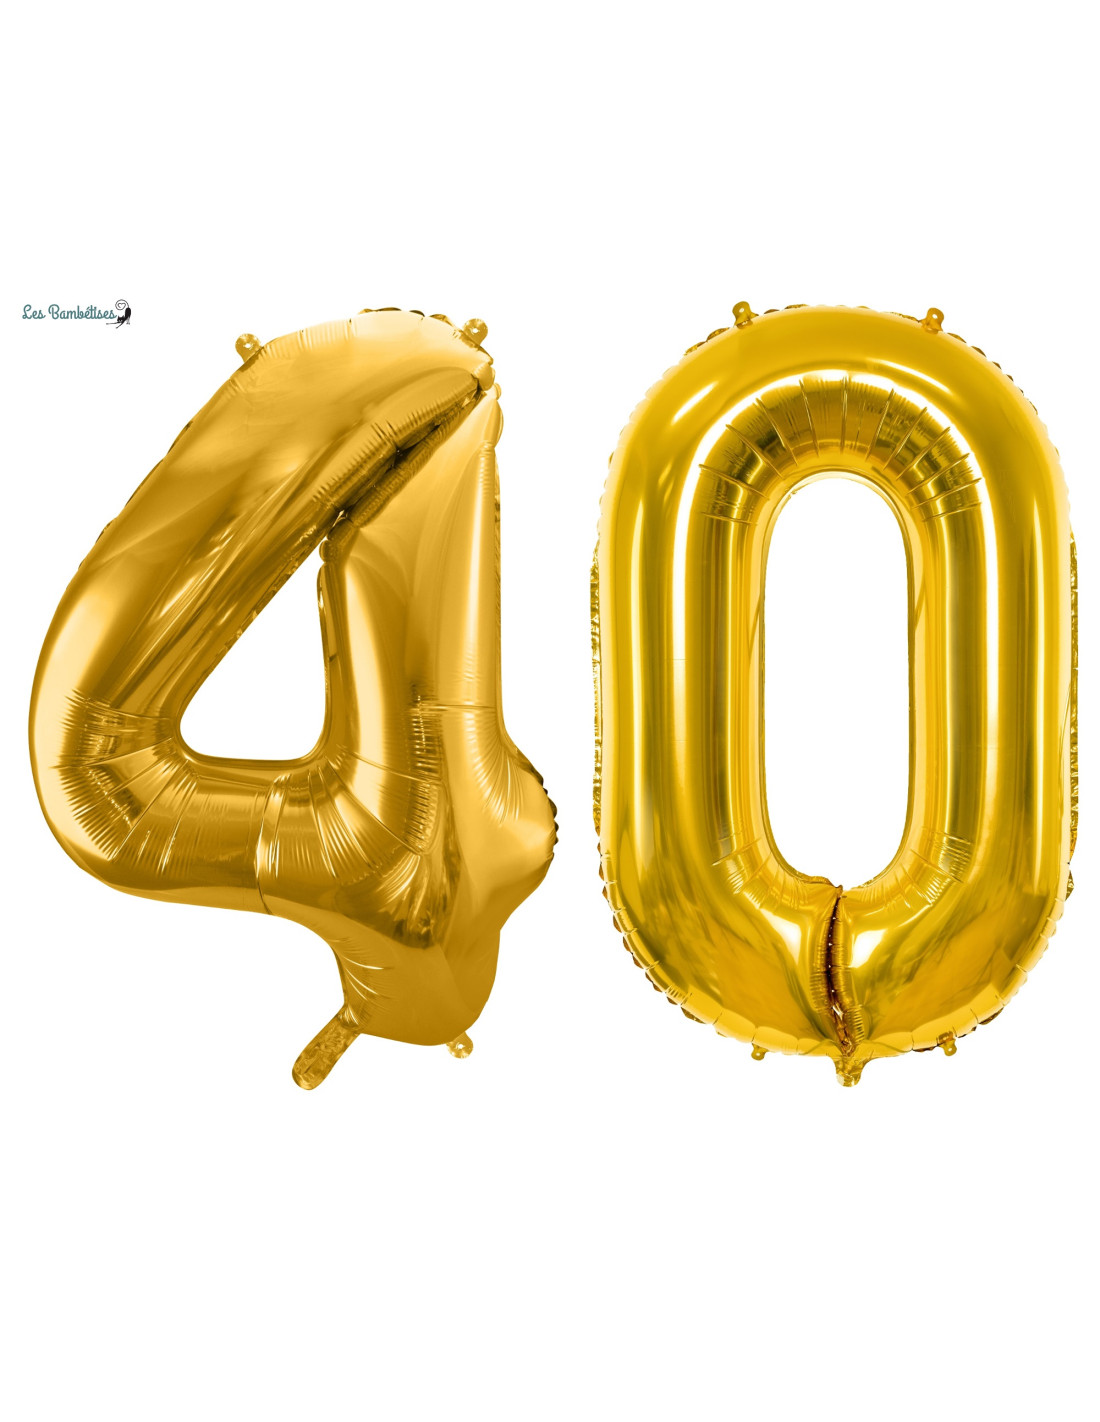 Ballon helium géant chiffre jaune - Decoration anniversaire